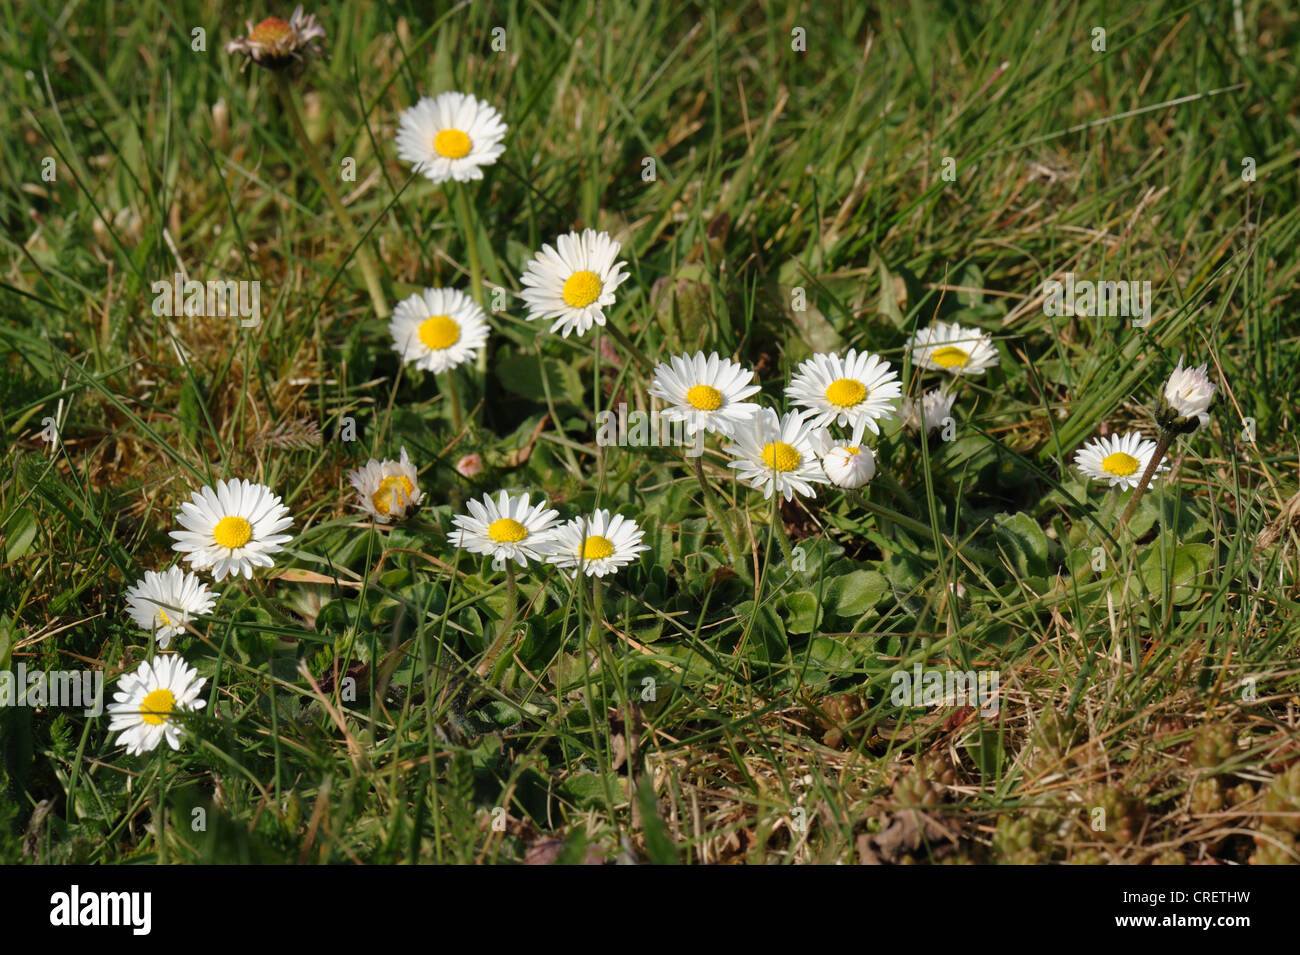 Vue au niveau du sol de la floraison daisy (Bellis perennis) dans un jardin pelouse Banque D'Images